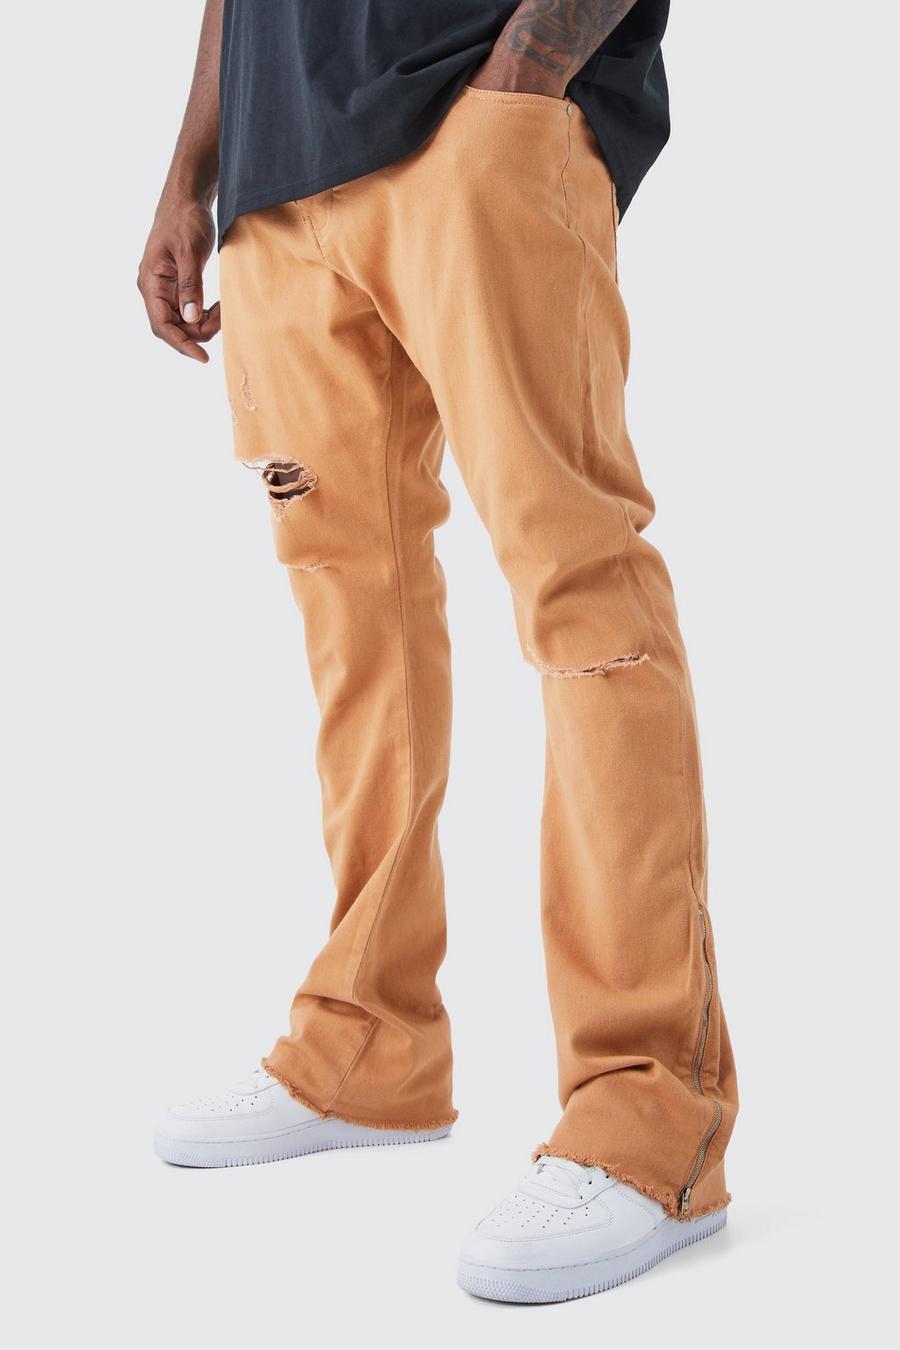 Pantaloni Plus Size con strappi & rattoppi in vita fissa, zip e inserti, Orange